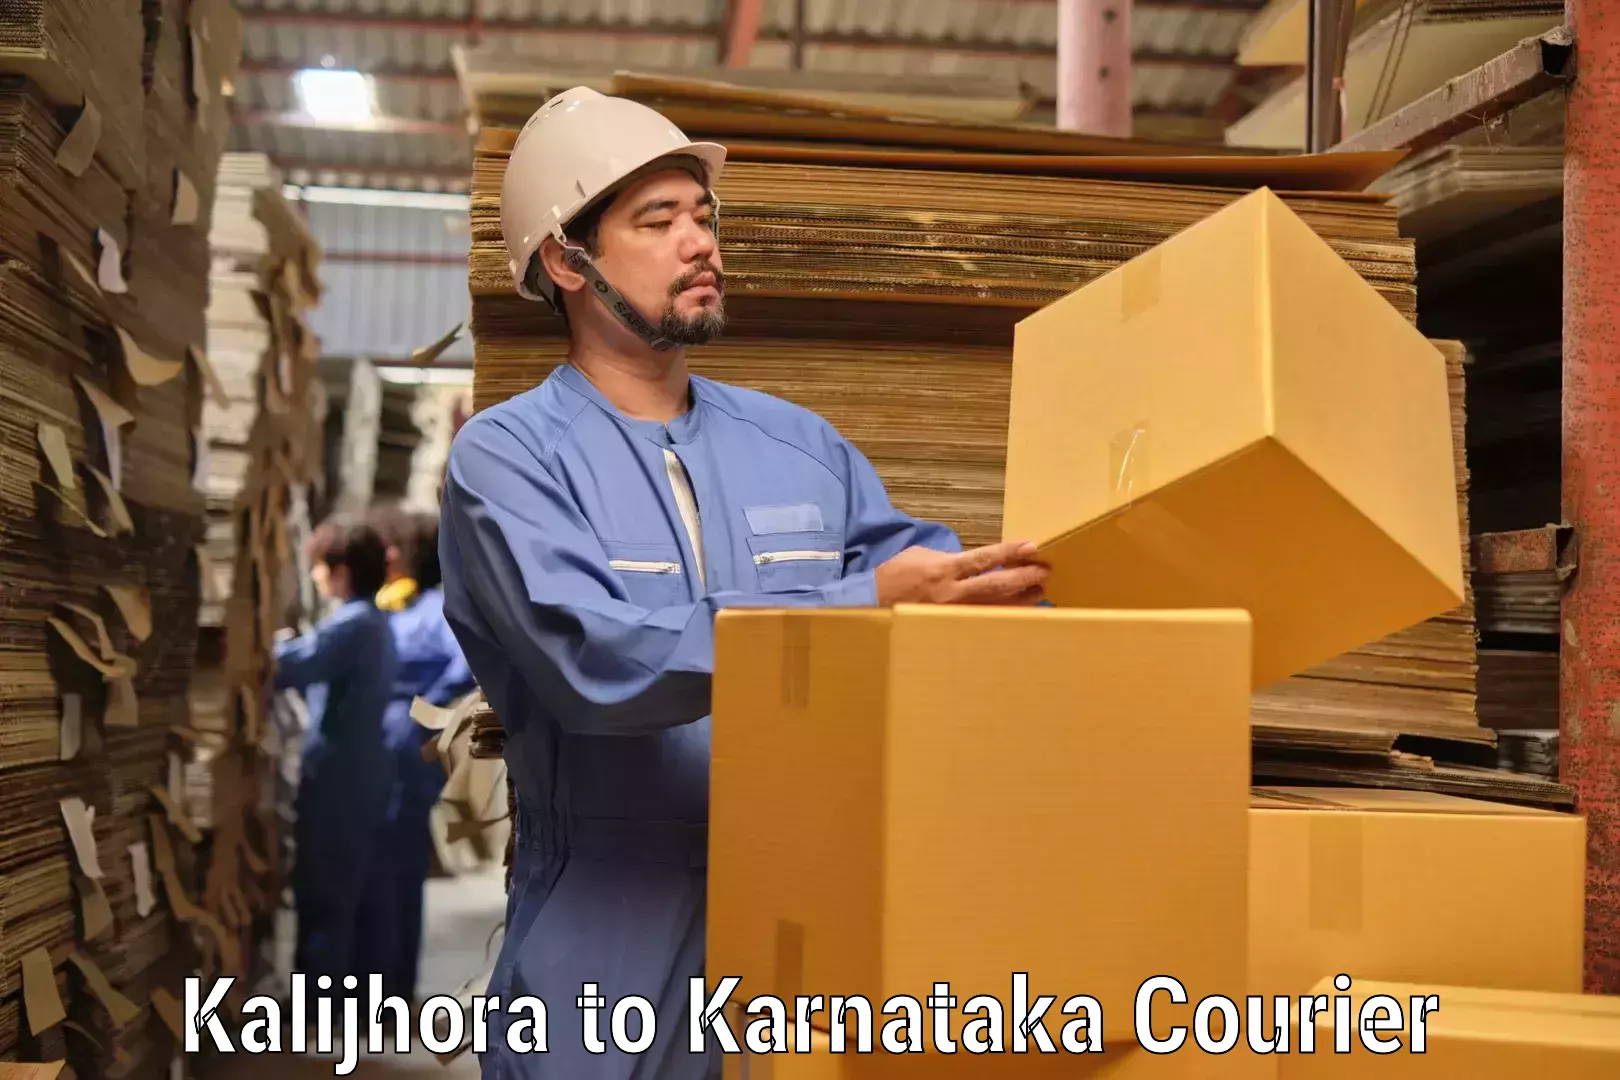 Global shipping solutions Kalijhora to Karnataka